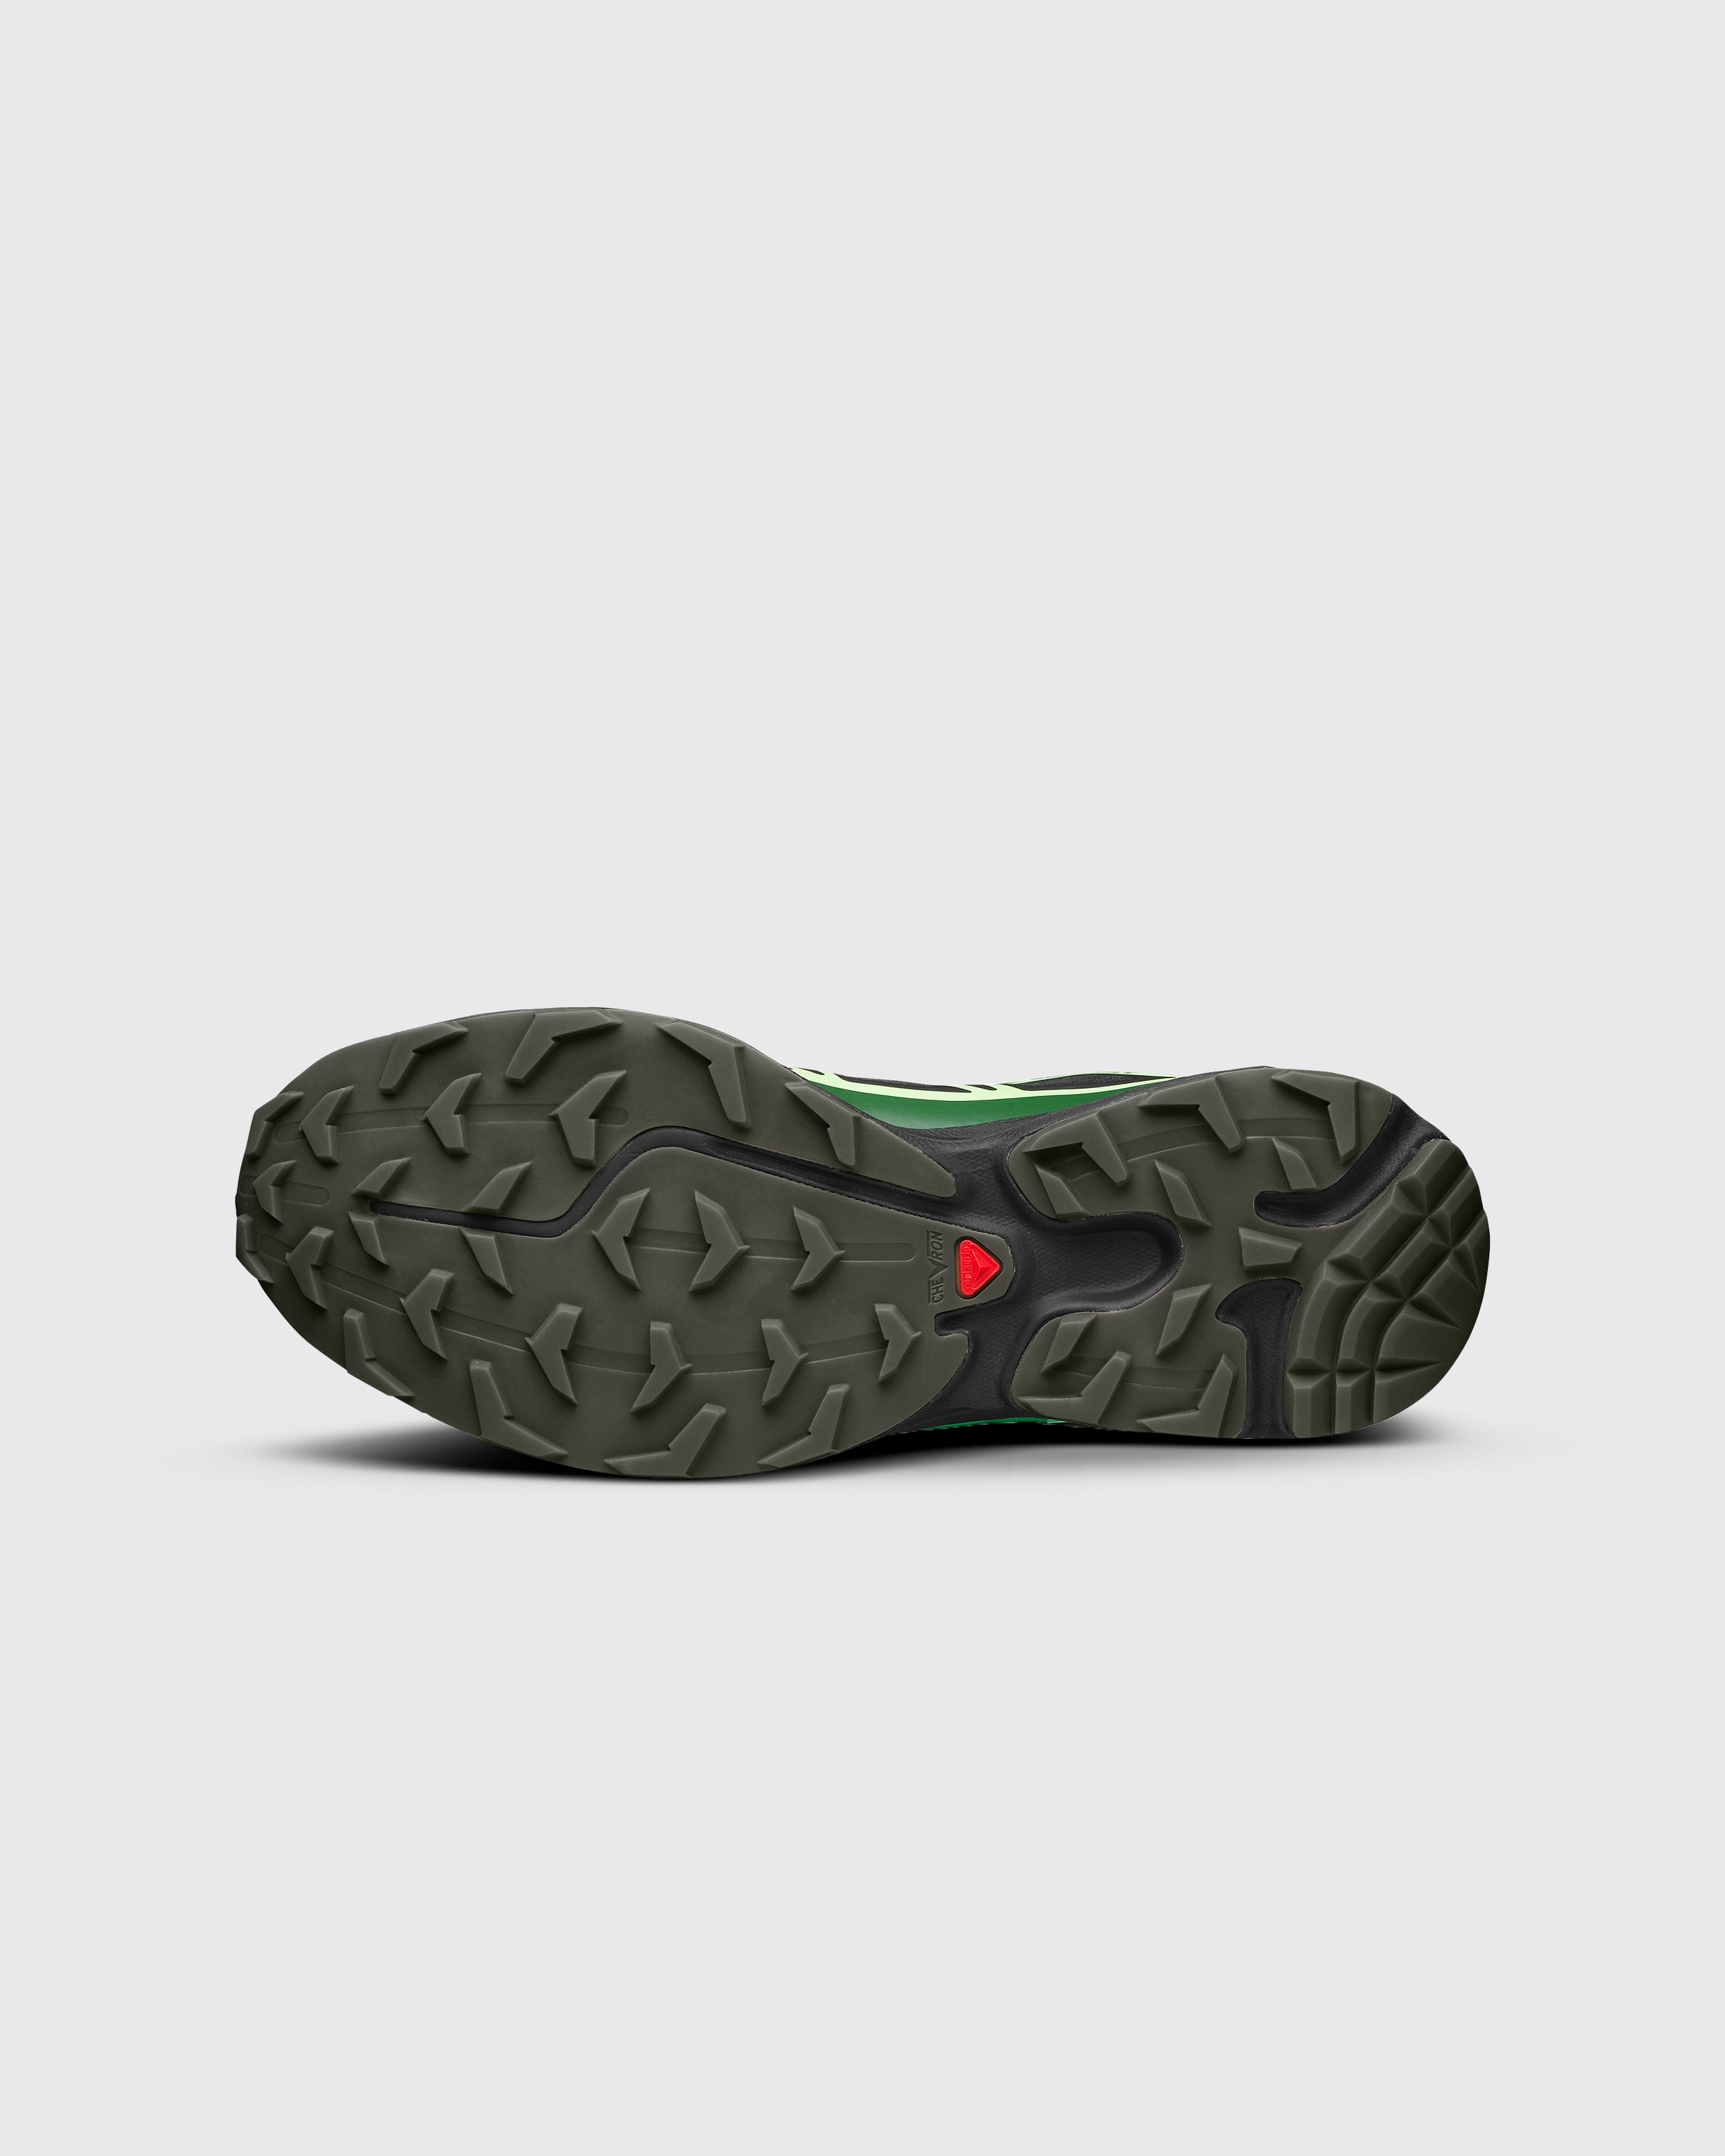 Salomon - XT-6 GTX Black/Eden/Green Ash - Footwear - Multi - Image 5